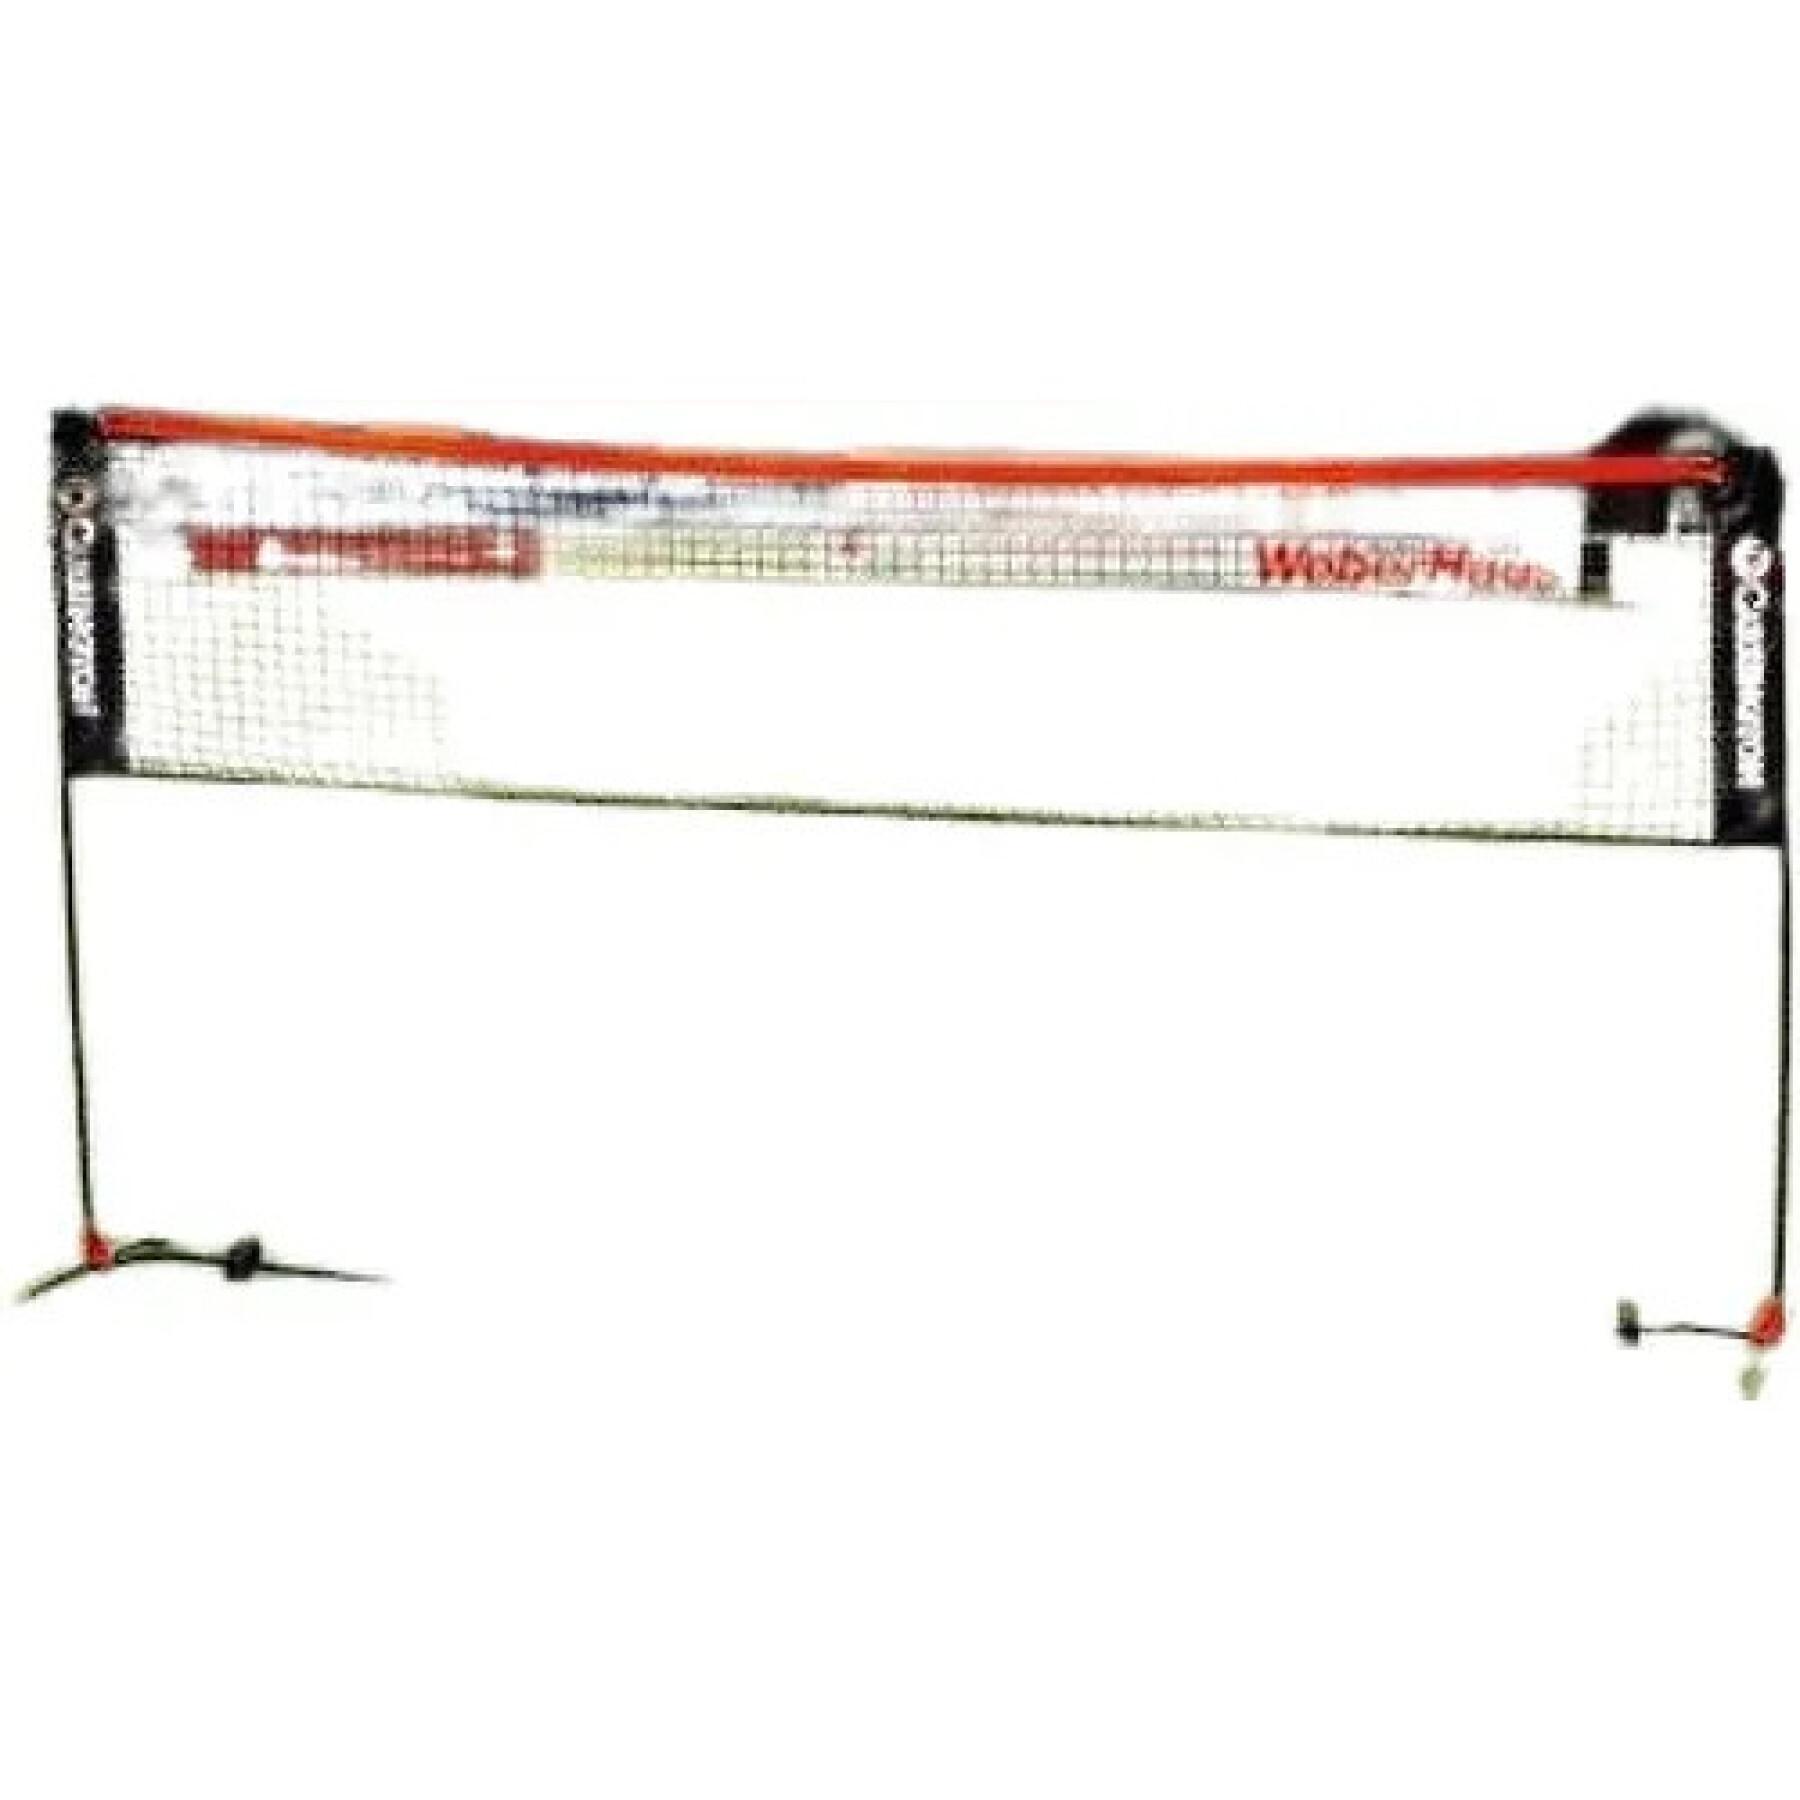 Transportable badminton net PowerShot